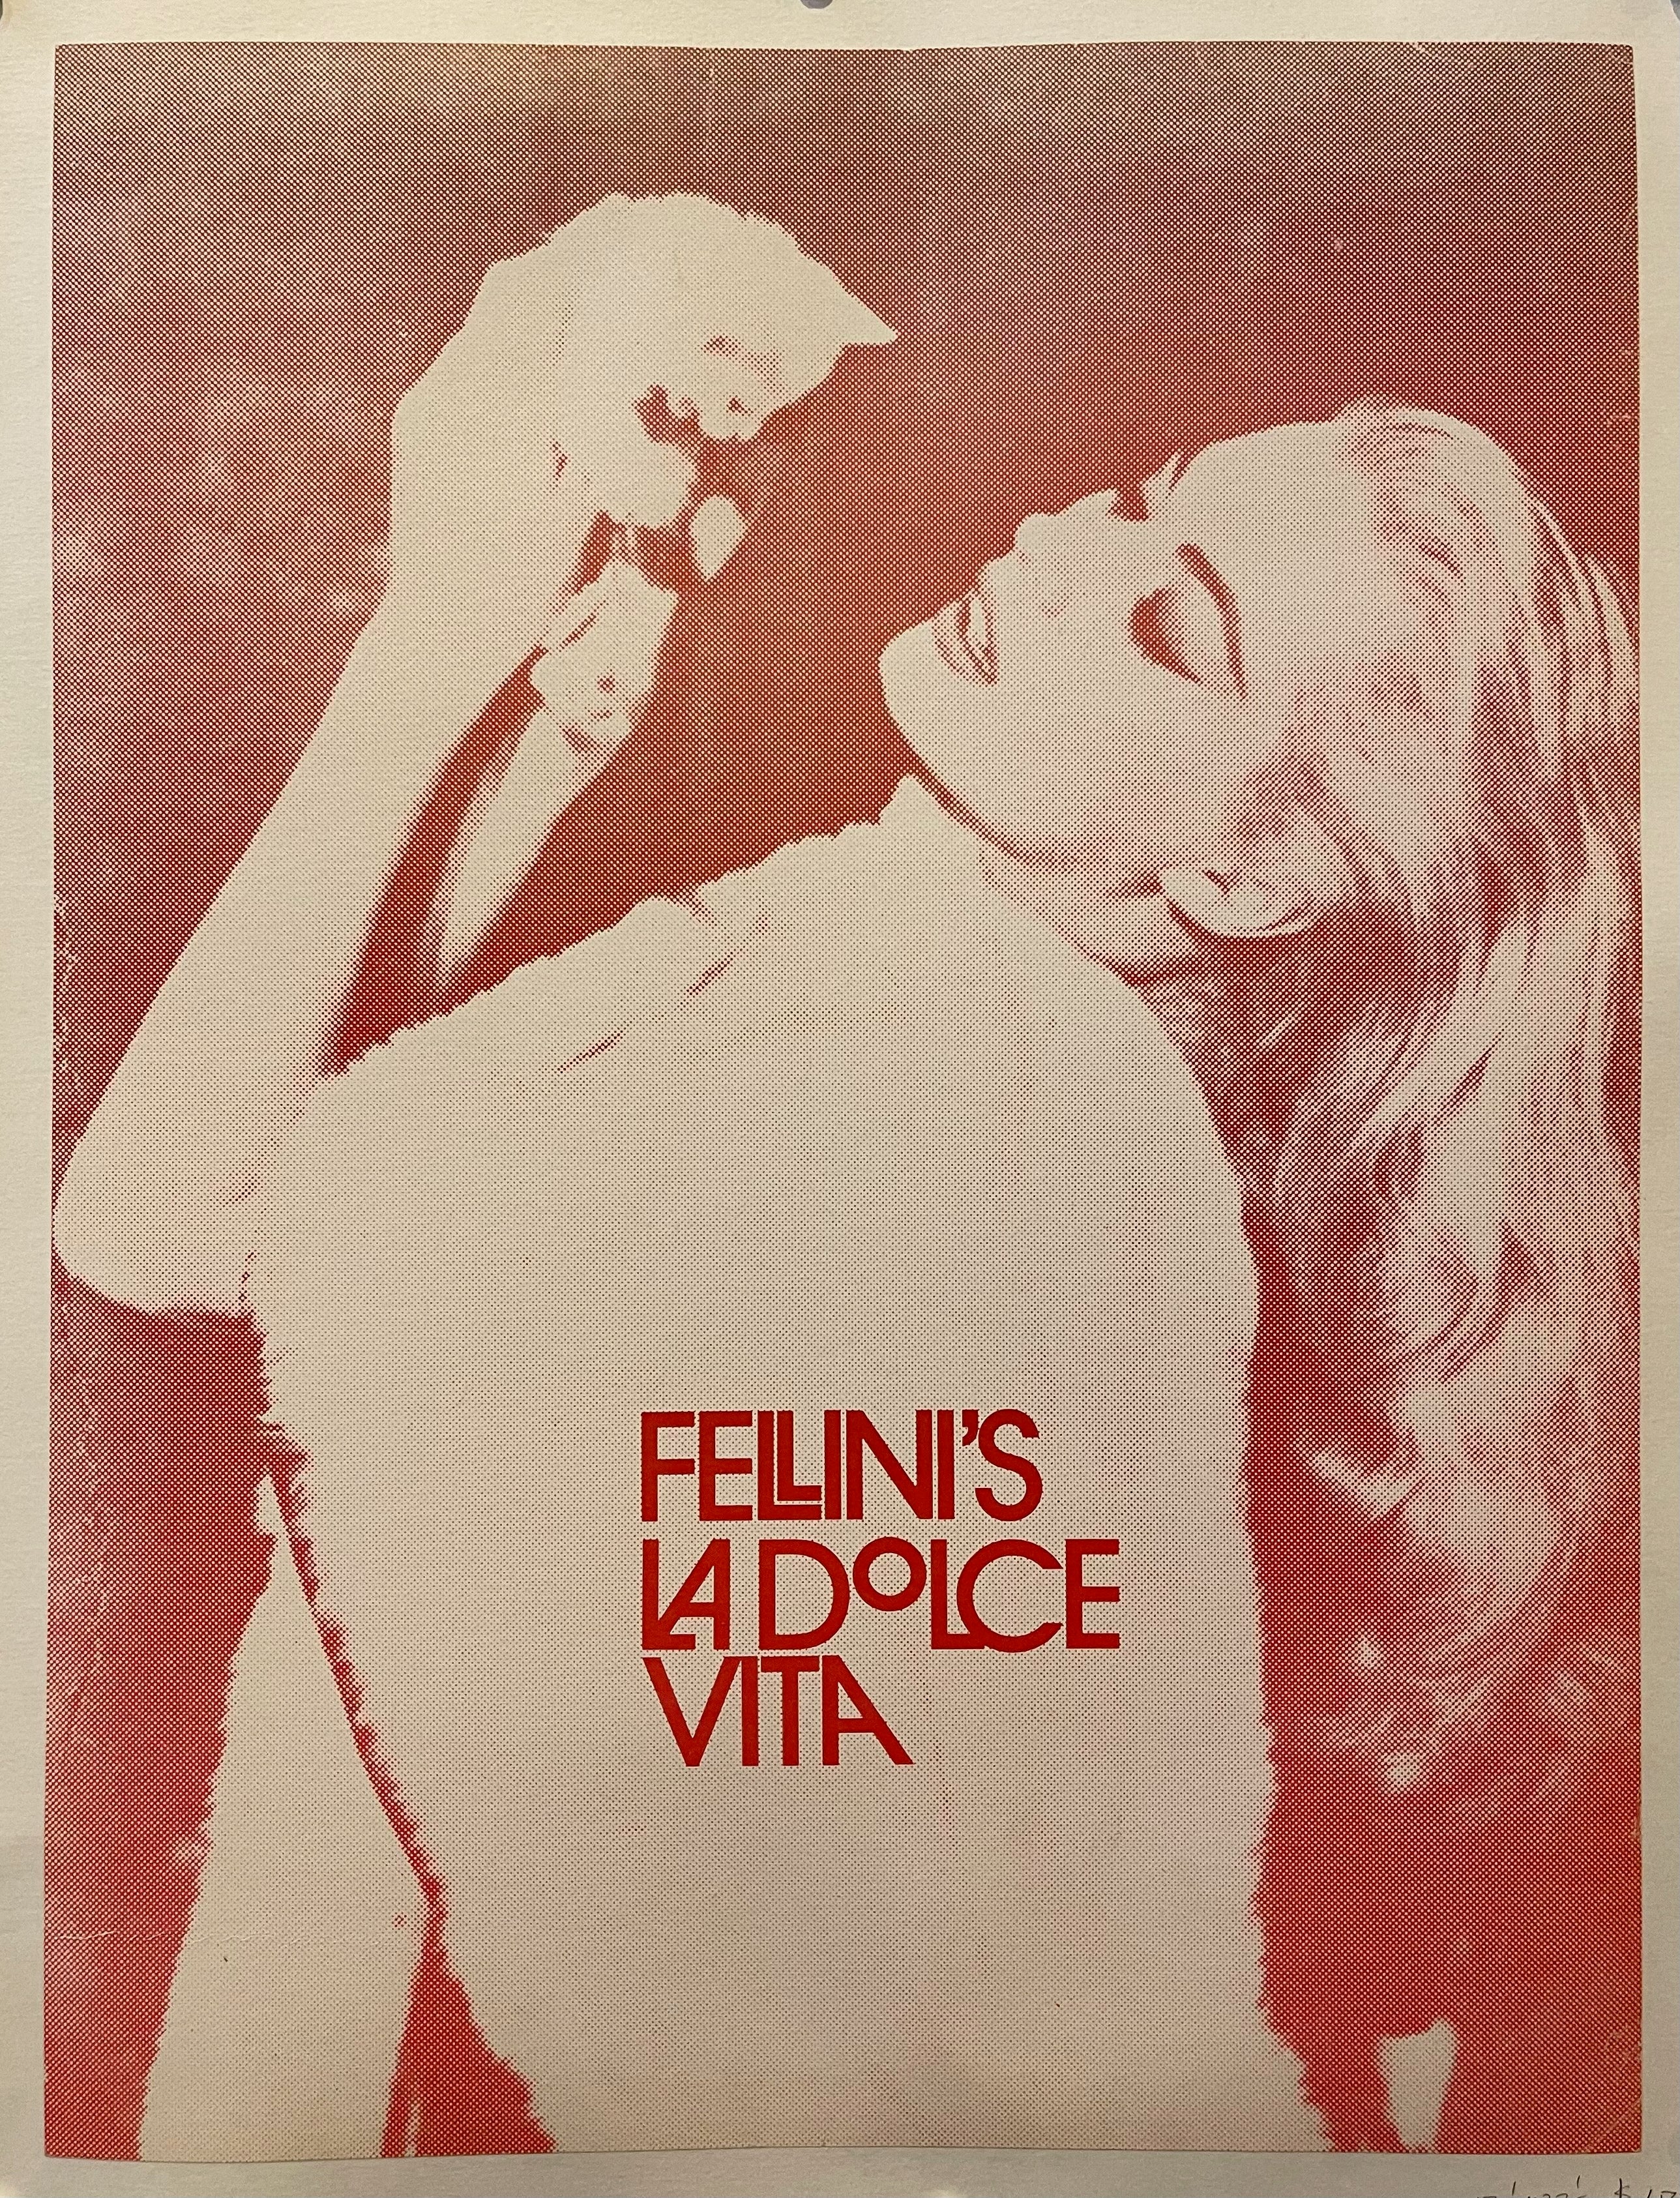 La Dolce Vita  Italian culture, 1960s cinema, Marcello